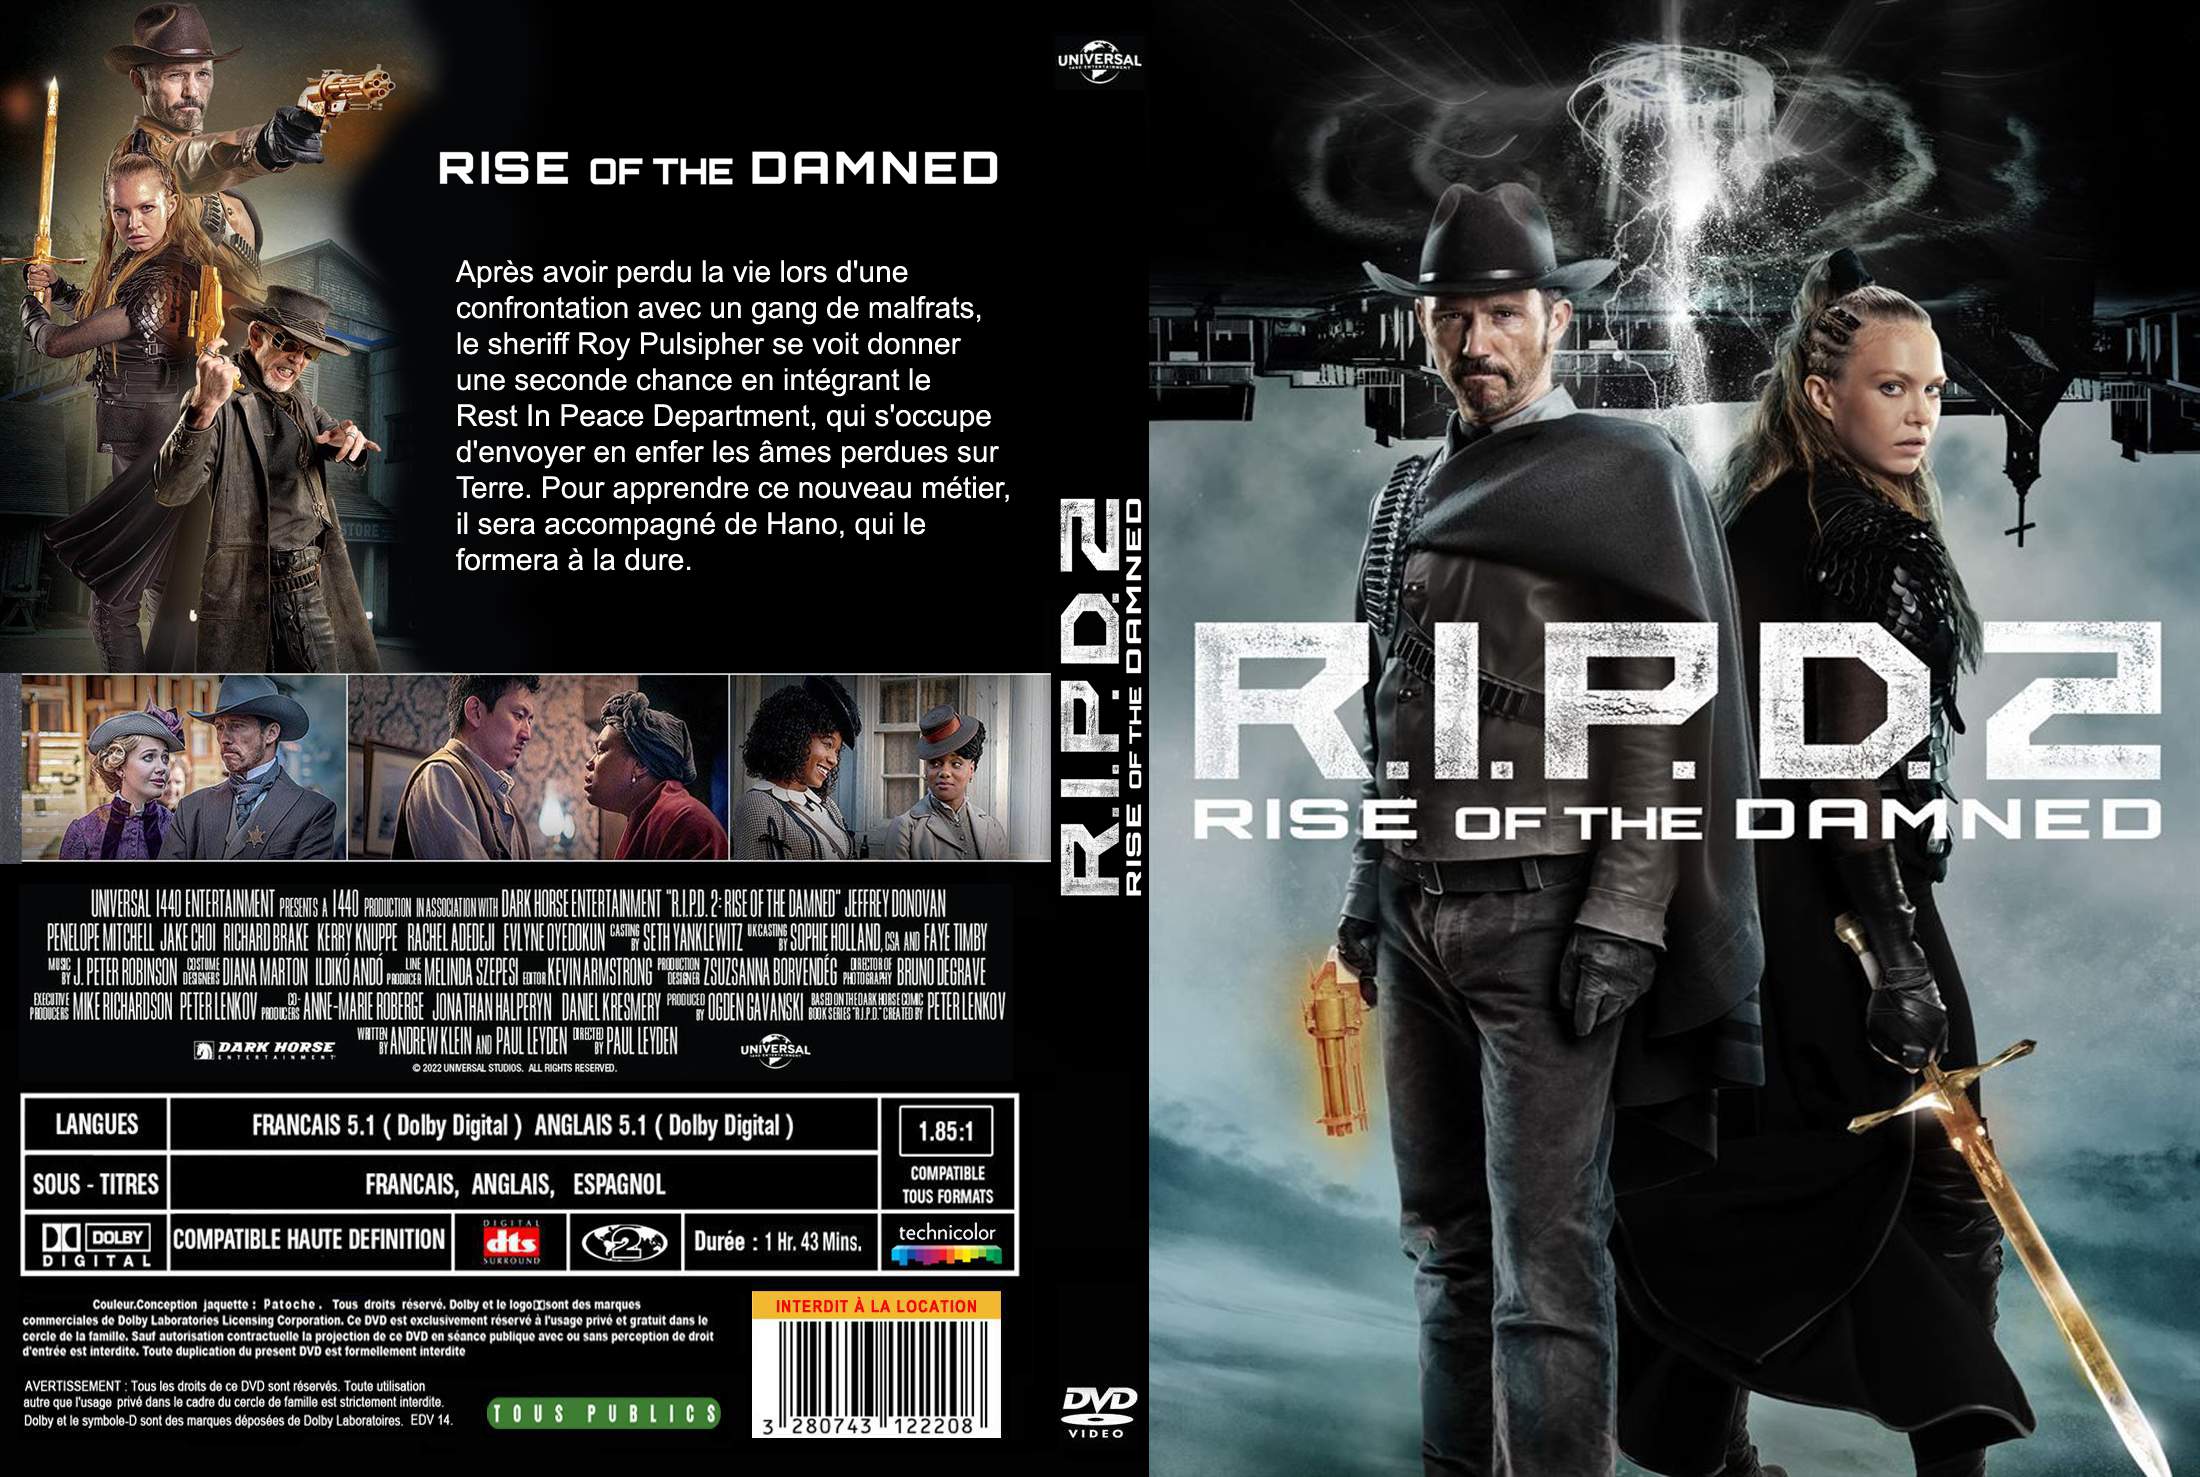 Jaquette DVD de RIPD 2 custom - Cinéma Passion